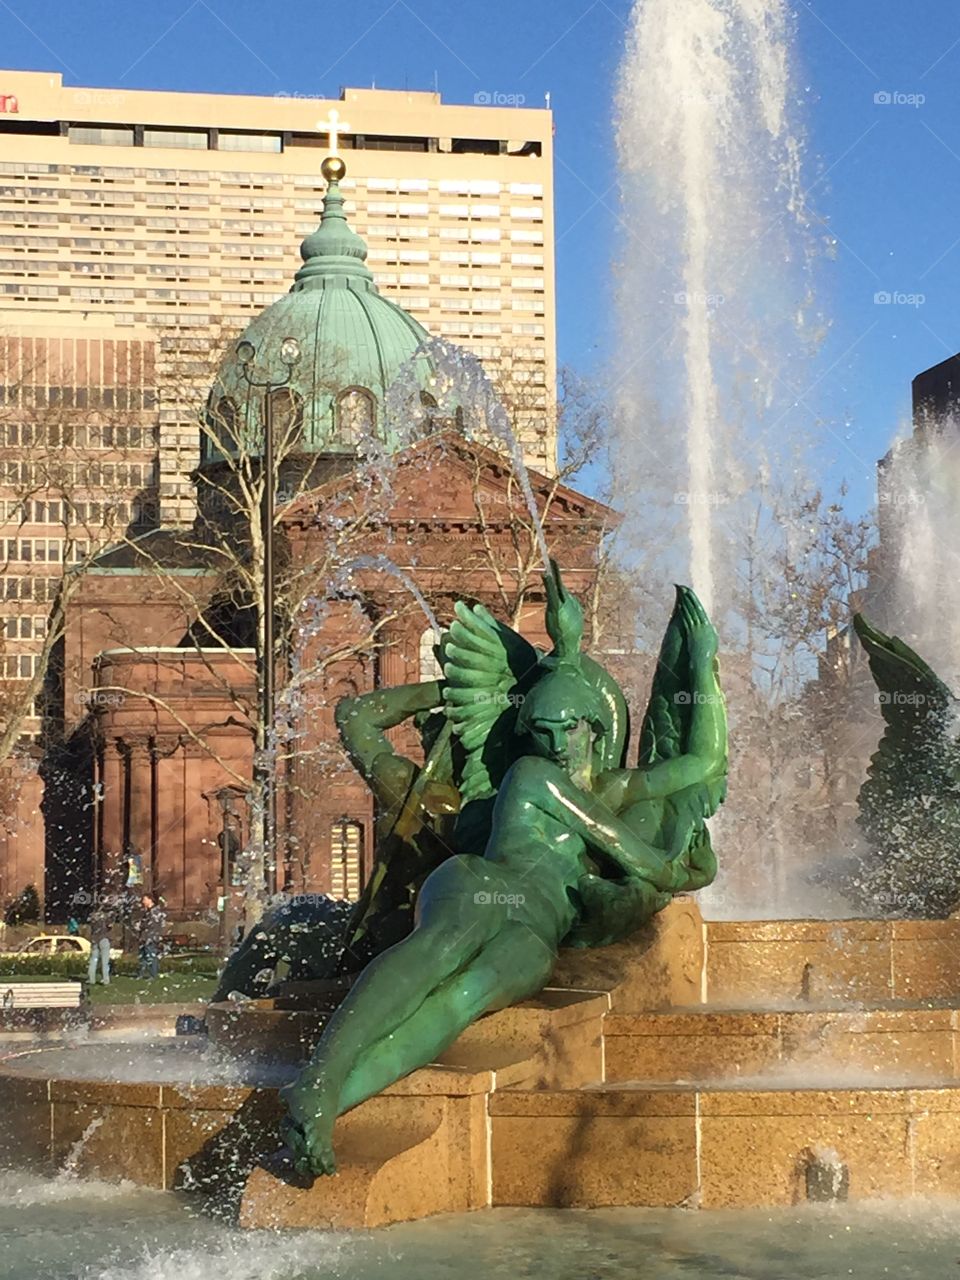 Logan Square Fountain and Basilica in Philadelphia 